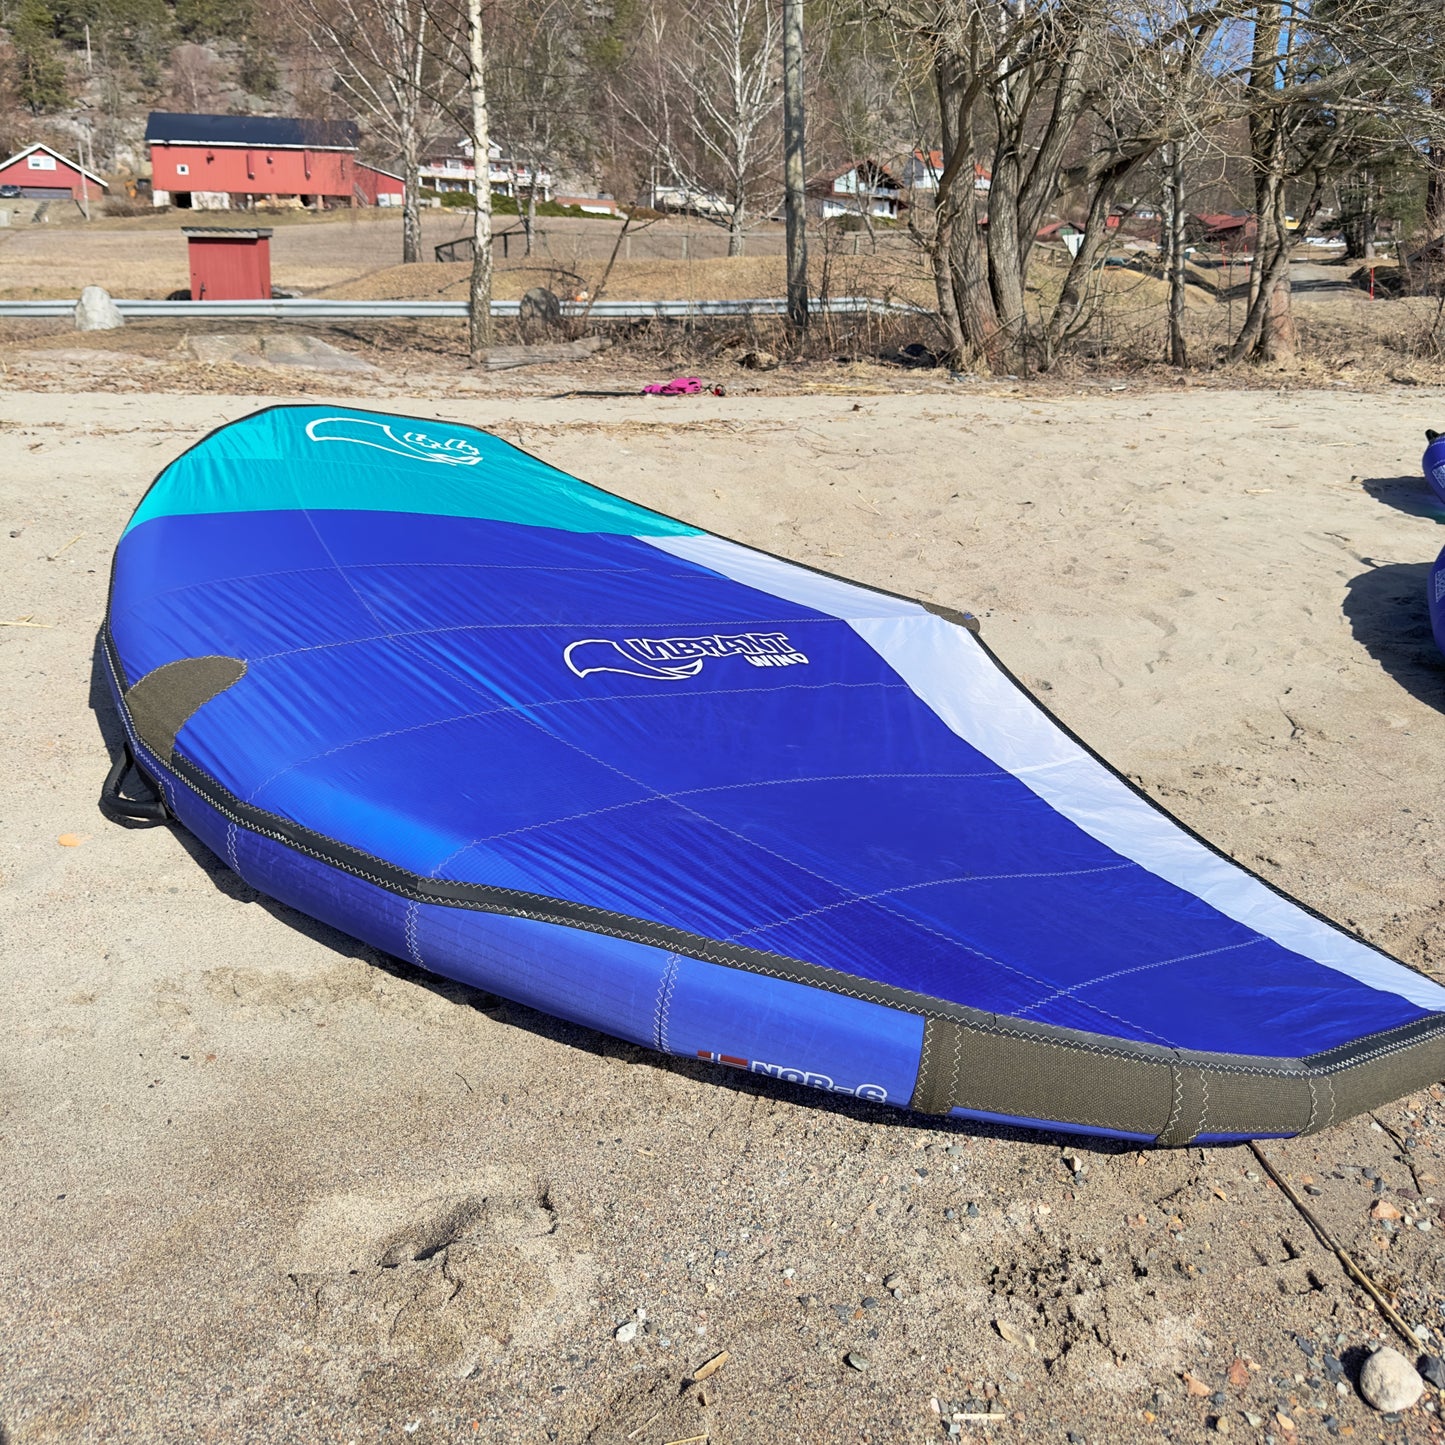 VIBRANT SURF - Wingfoil racing pakke - 2023